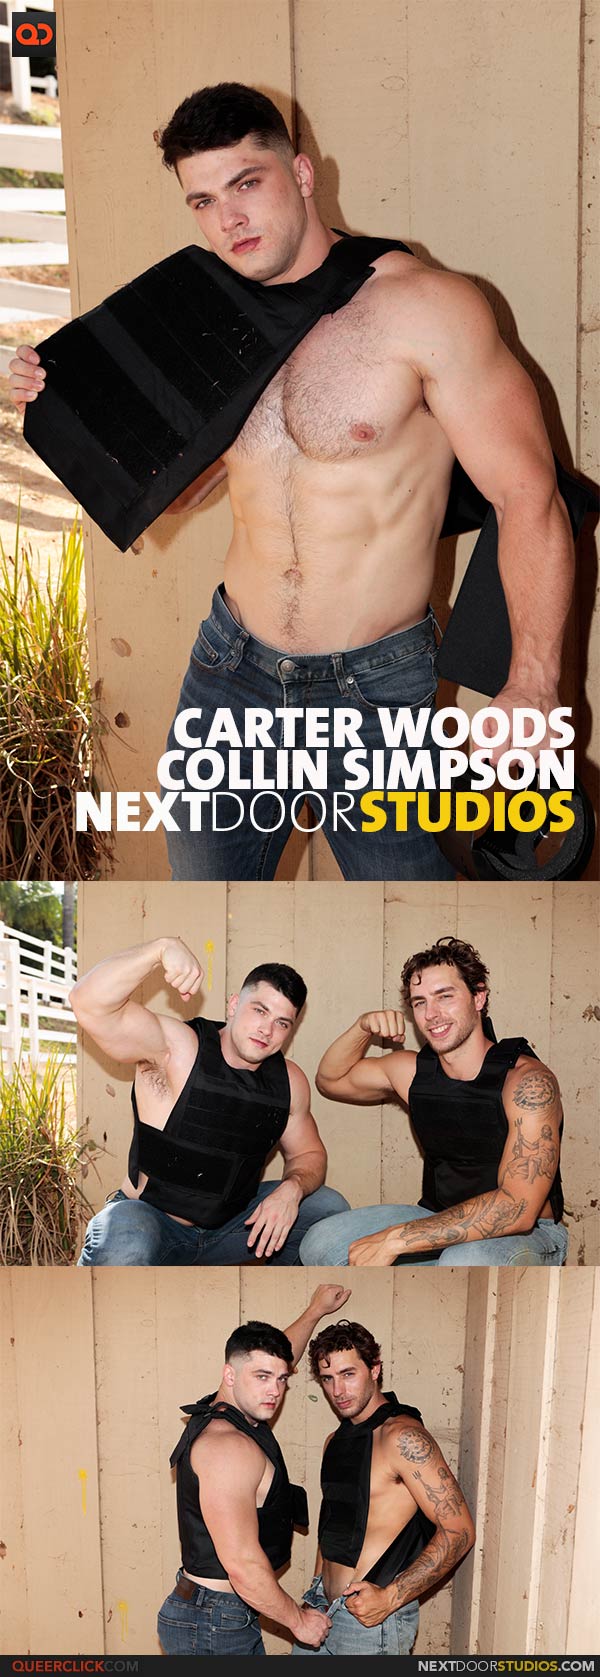 NextDoorStudios: Carter Woods and Collin Simpson